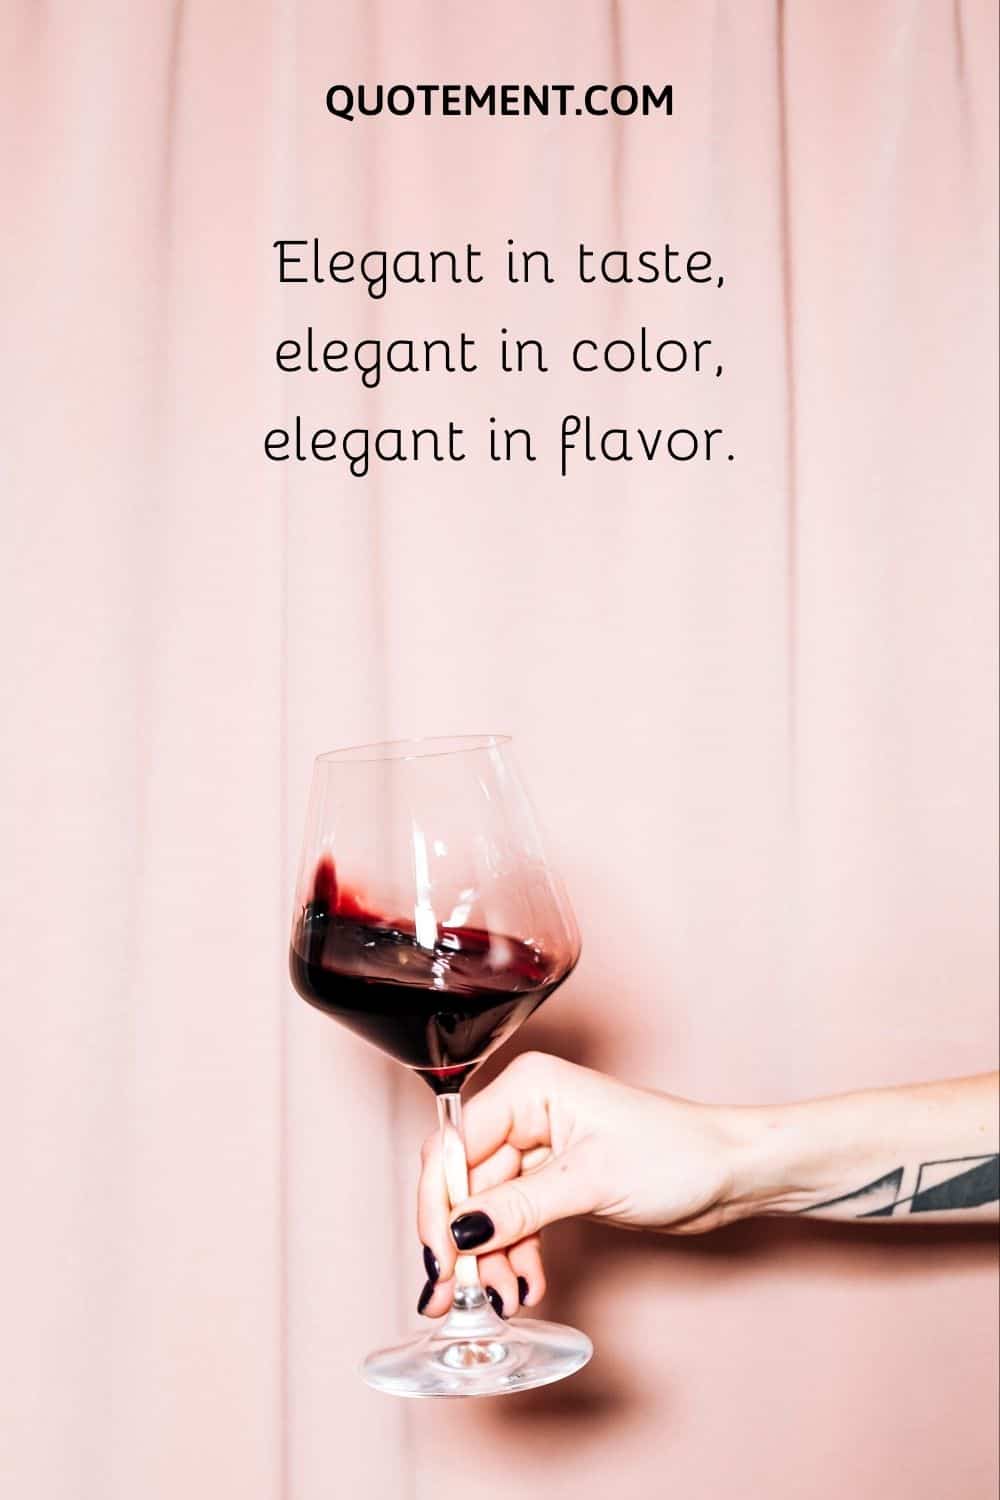 Elegant in taste